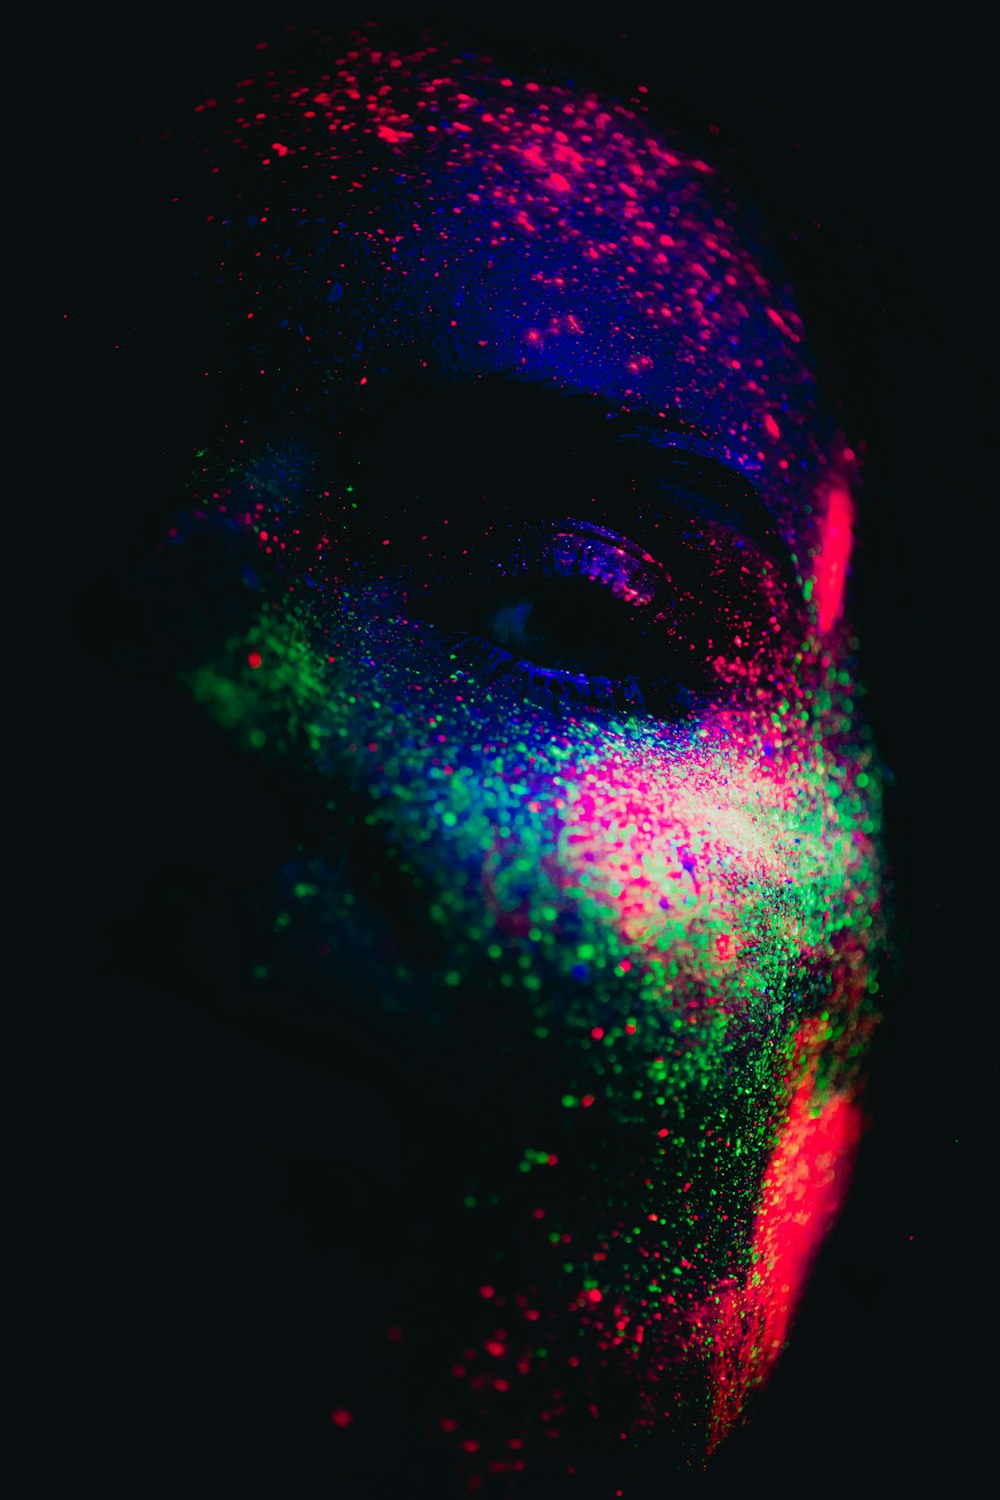 le visage d’un homme couvert de poudre colorée